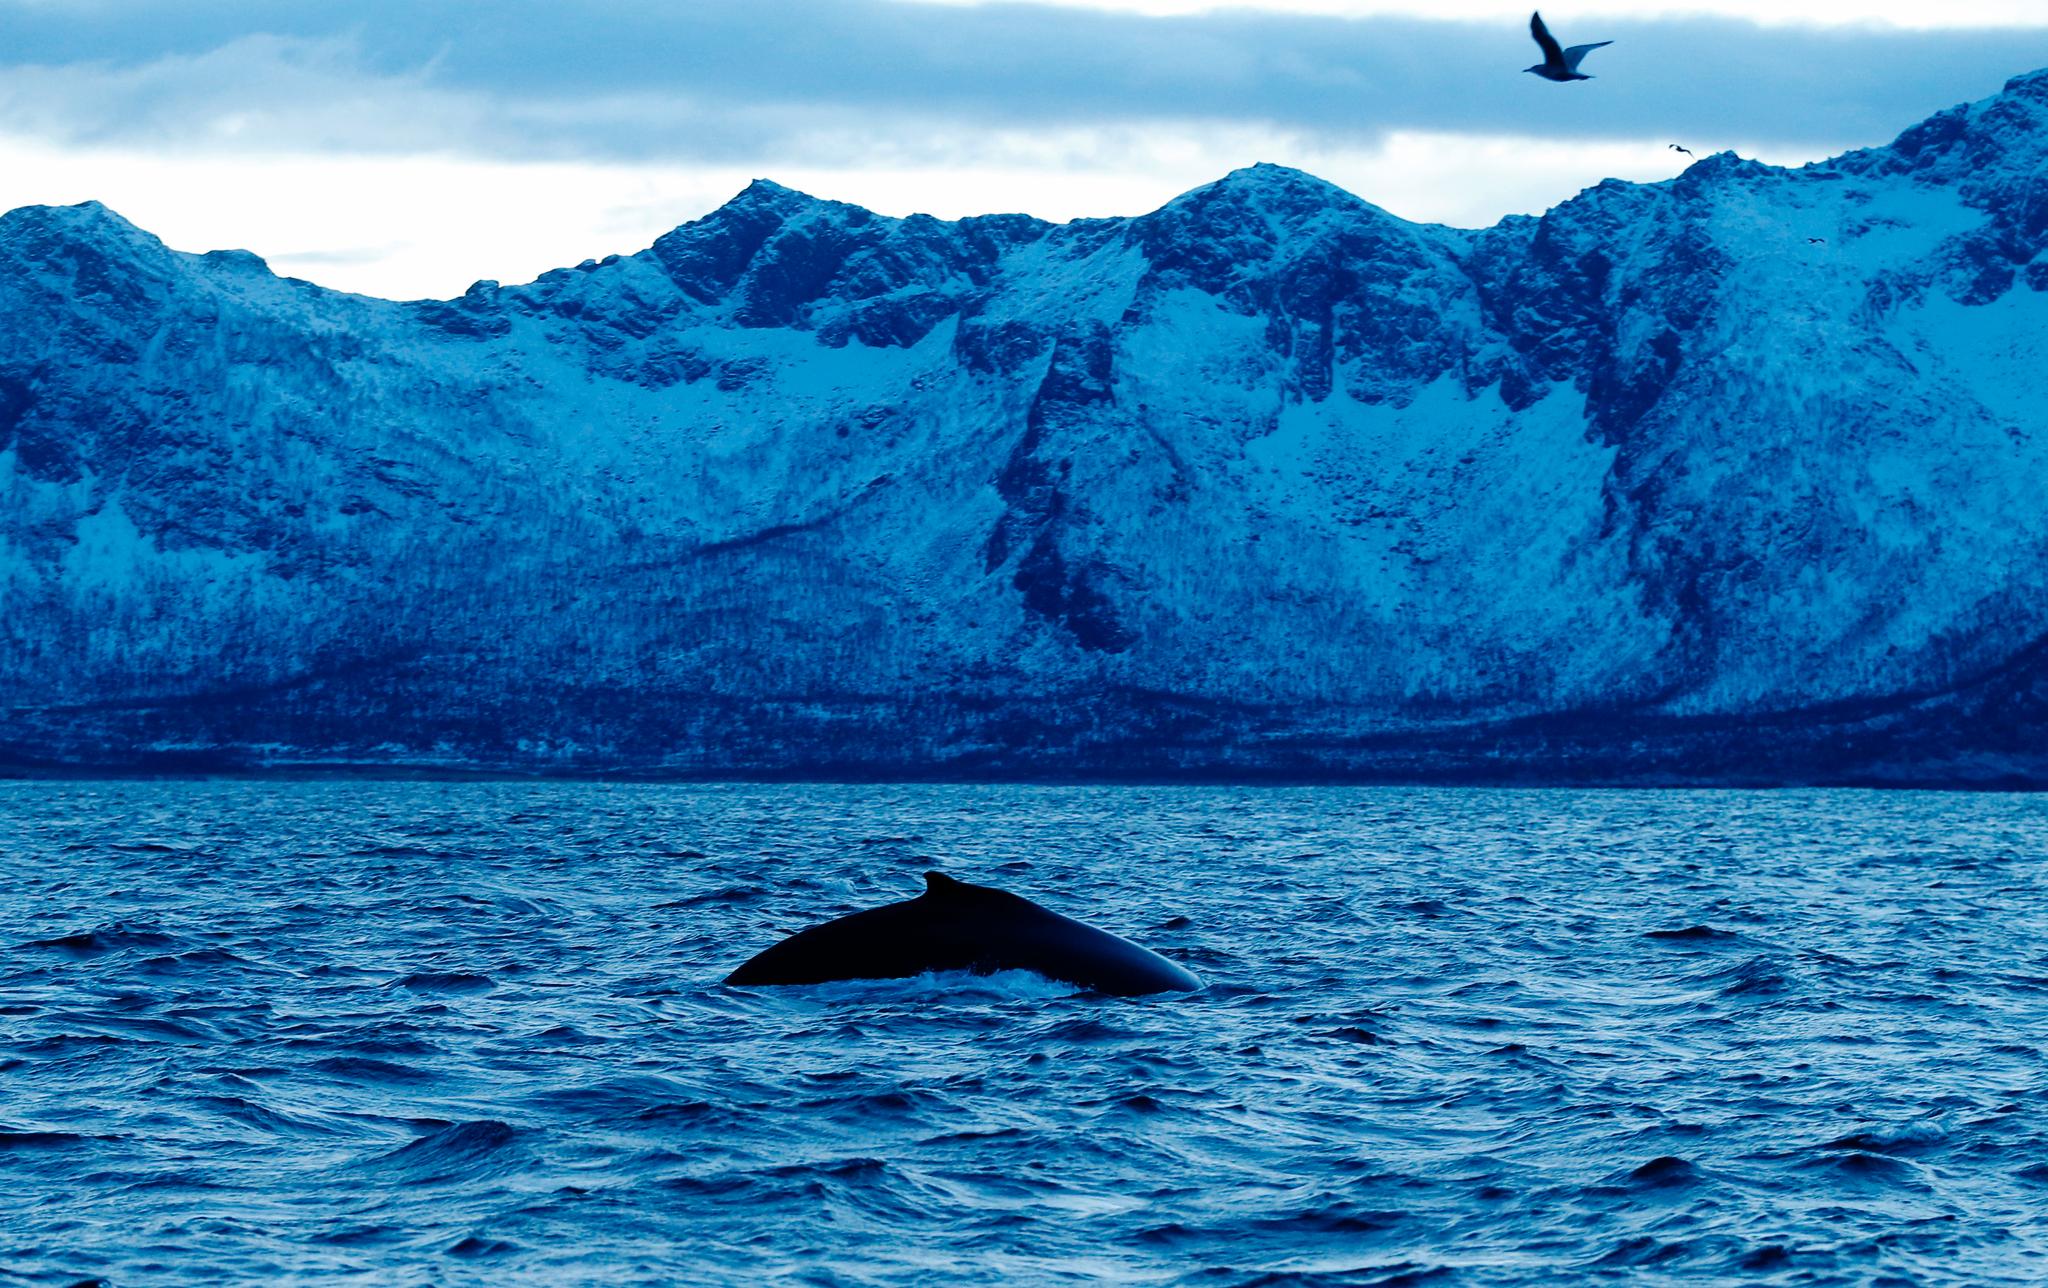 Mens temperaturen i verden gradvis øker, har havområdene sør for Grønland vært overraskende kalde de siste årene, skriver Helene Asbjørnsen og Marius Årthun. Bildet er fra Senja.